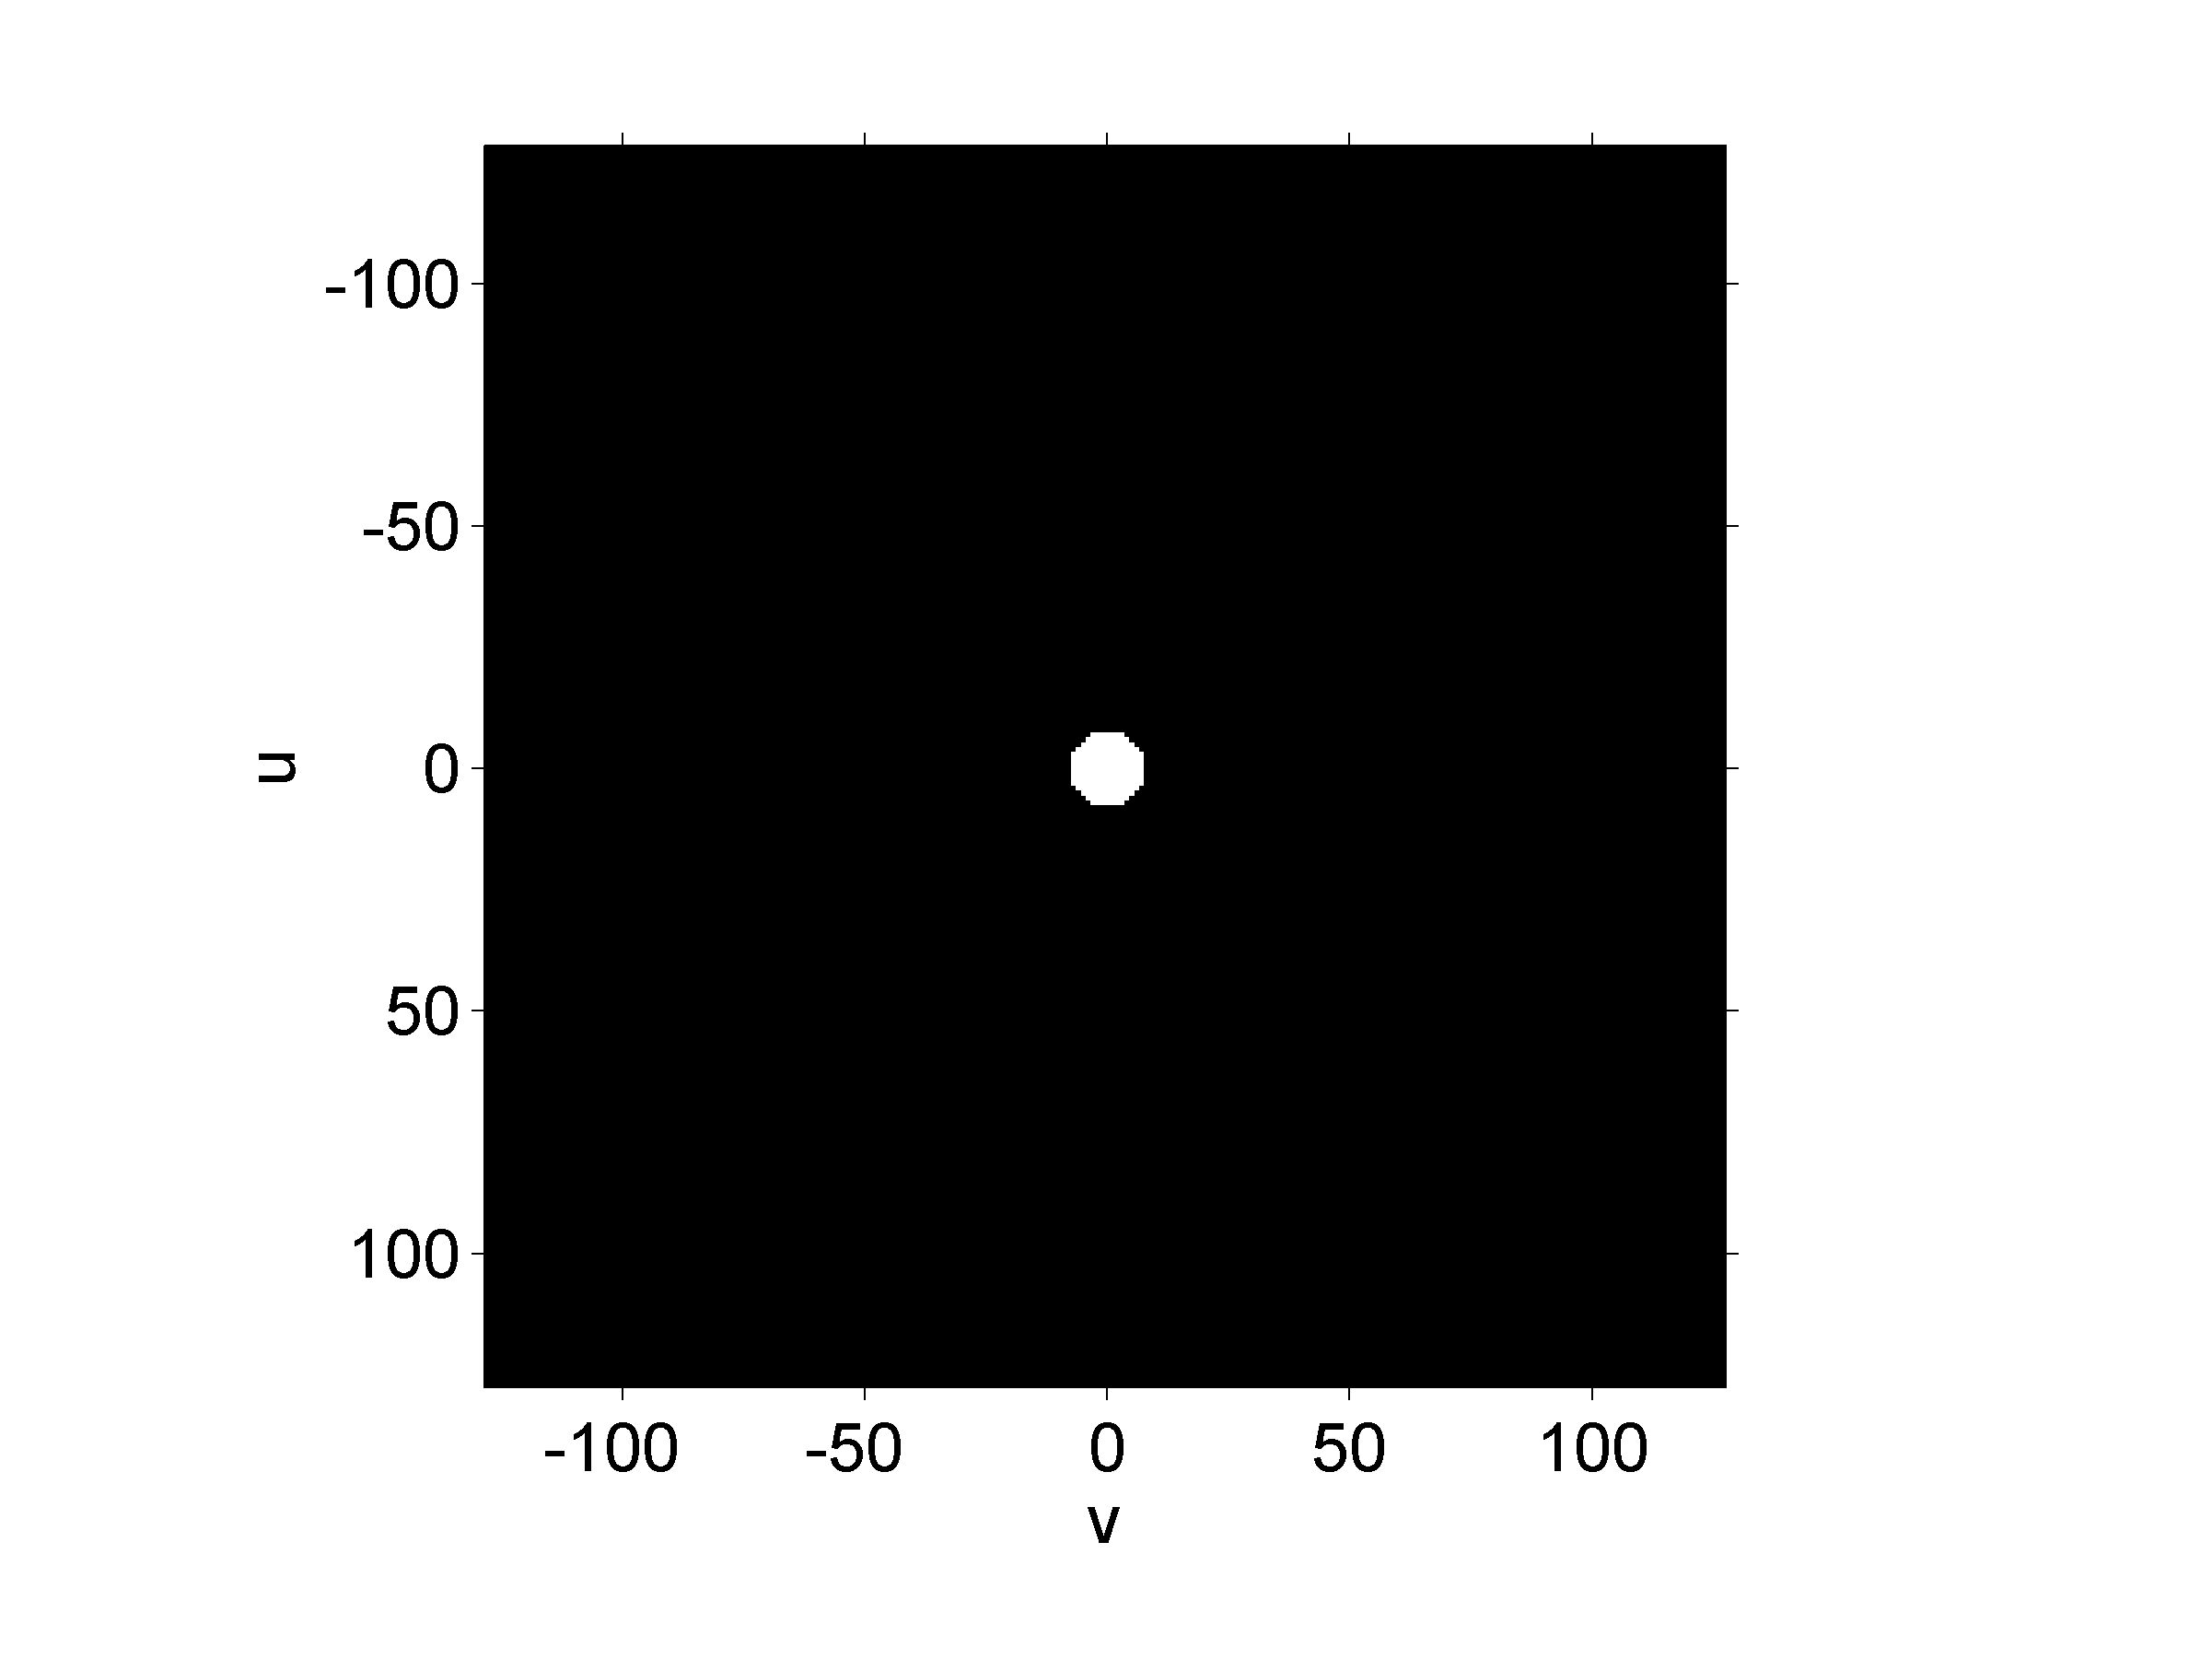 Romlig representasjon av ideelt lavpassfilter 2D IDFT Den romlige representasjonen er en trunkert